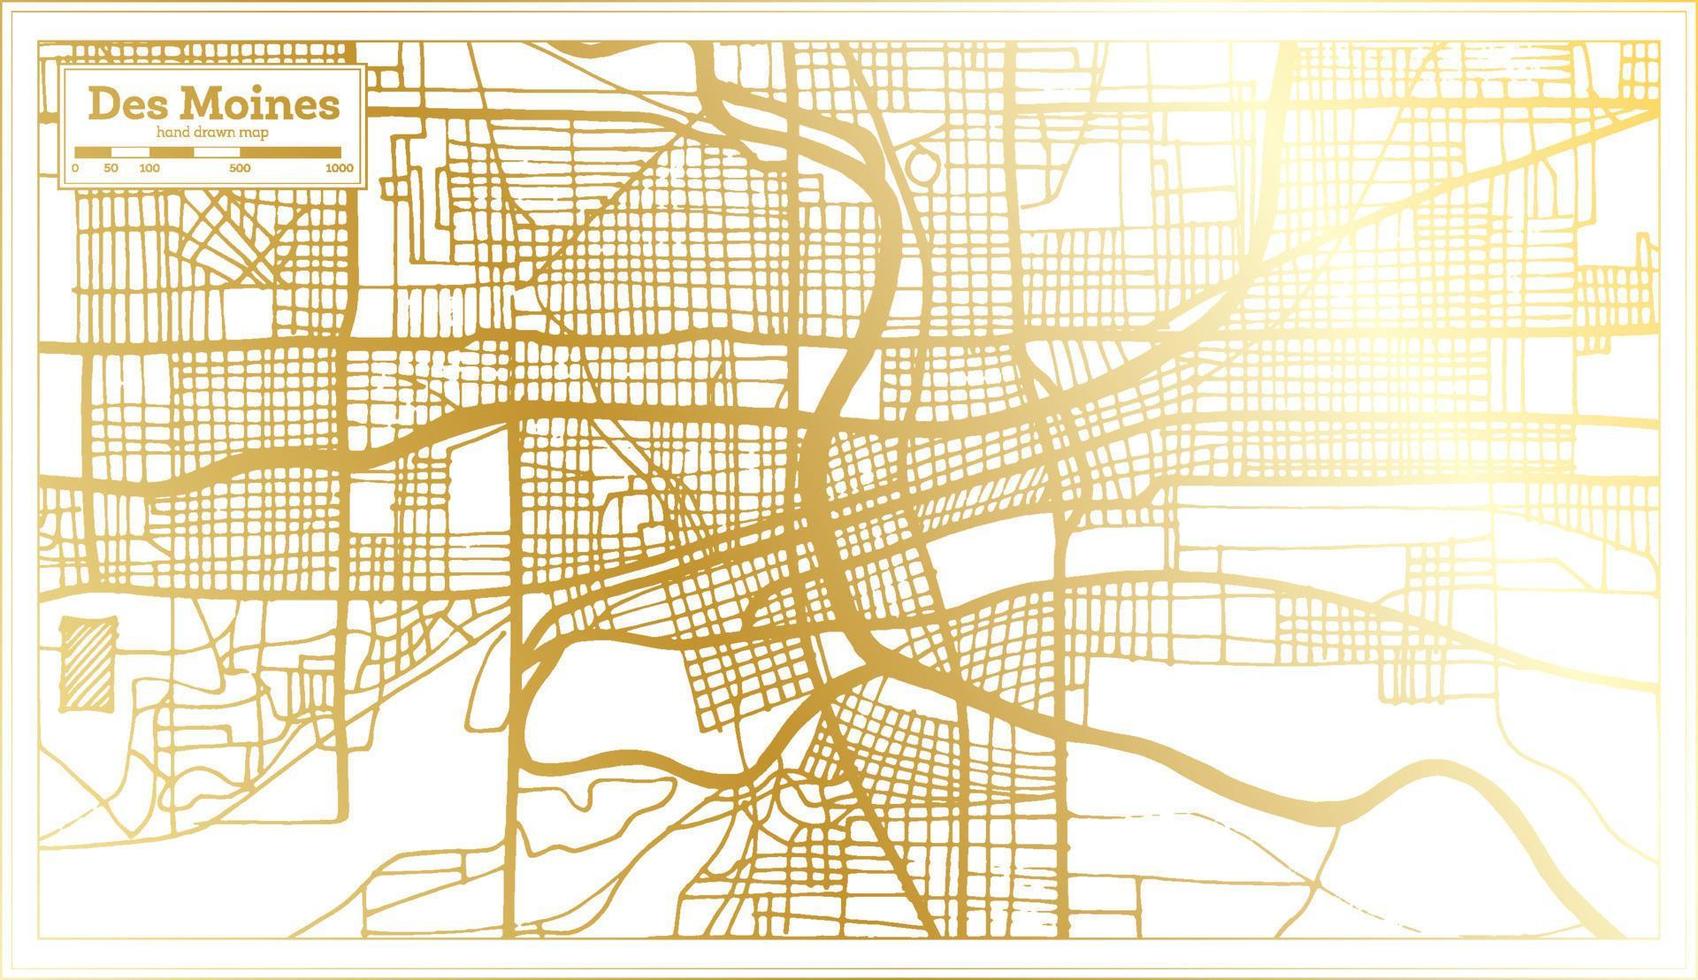 plan de la ville des usa des moines dans un style rétro de couleur dorée. carte muette. vecteur